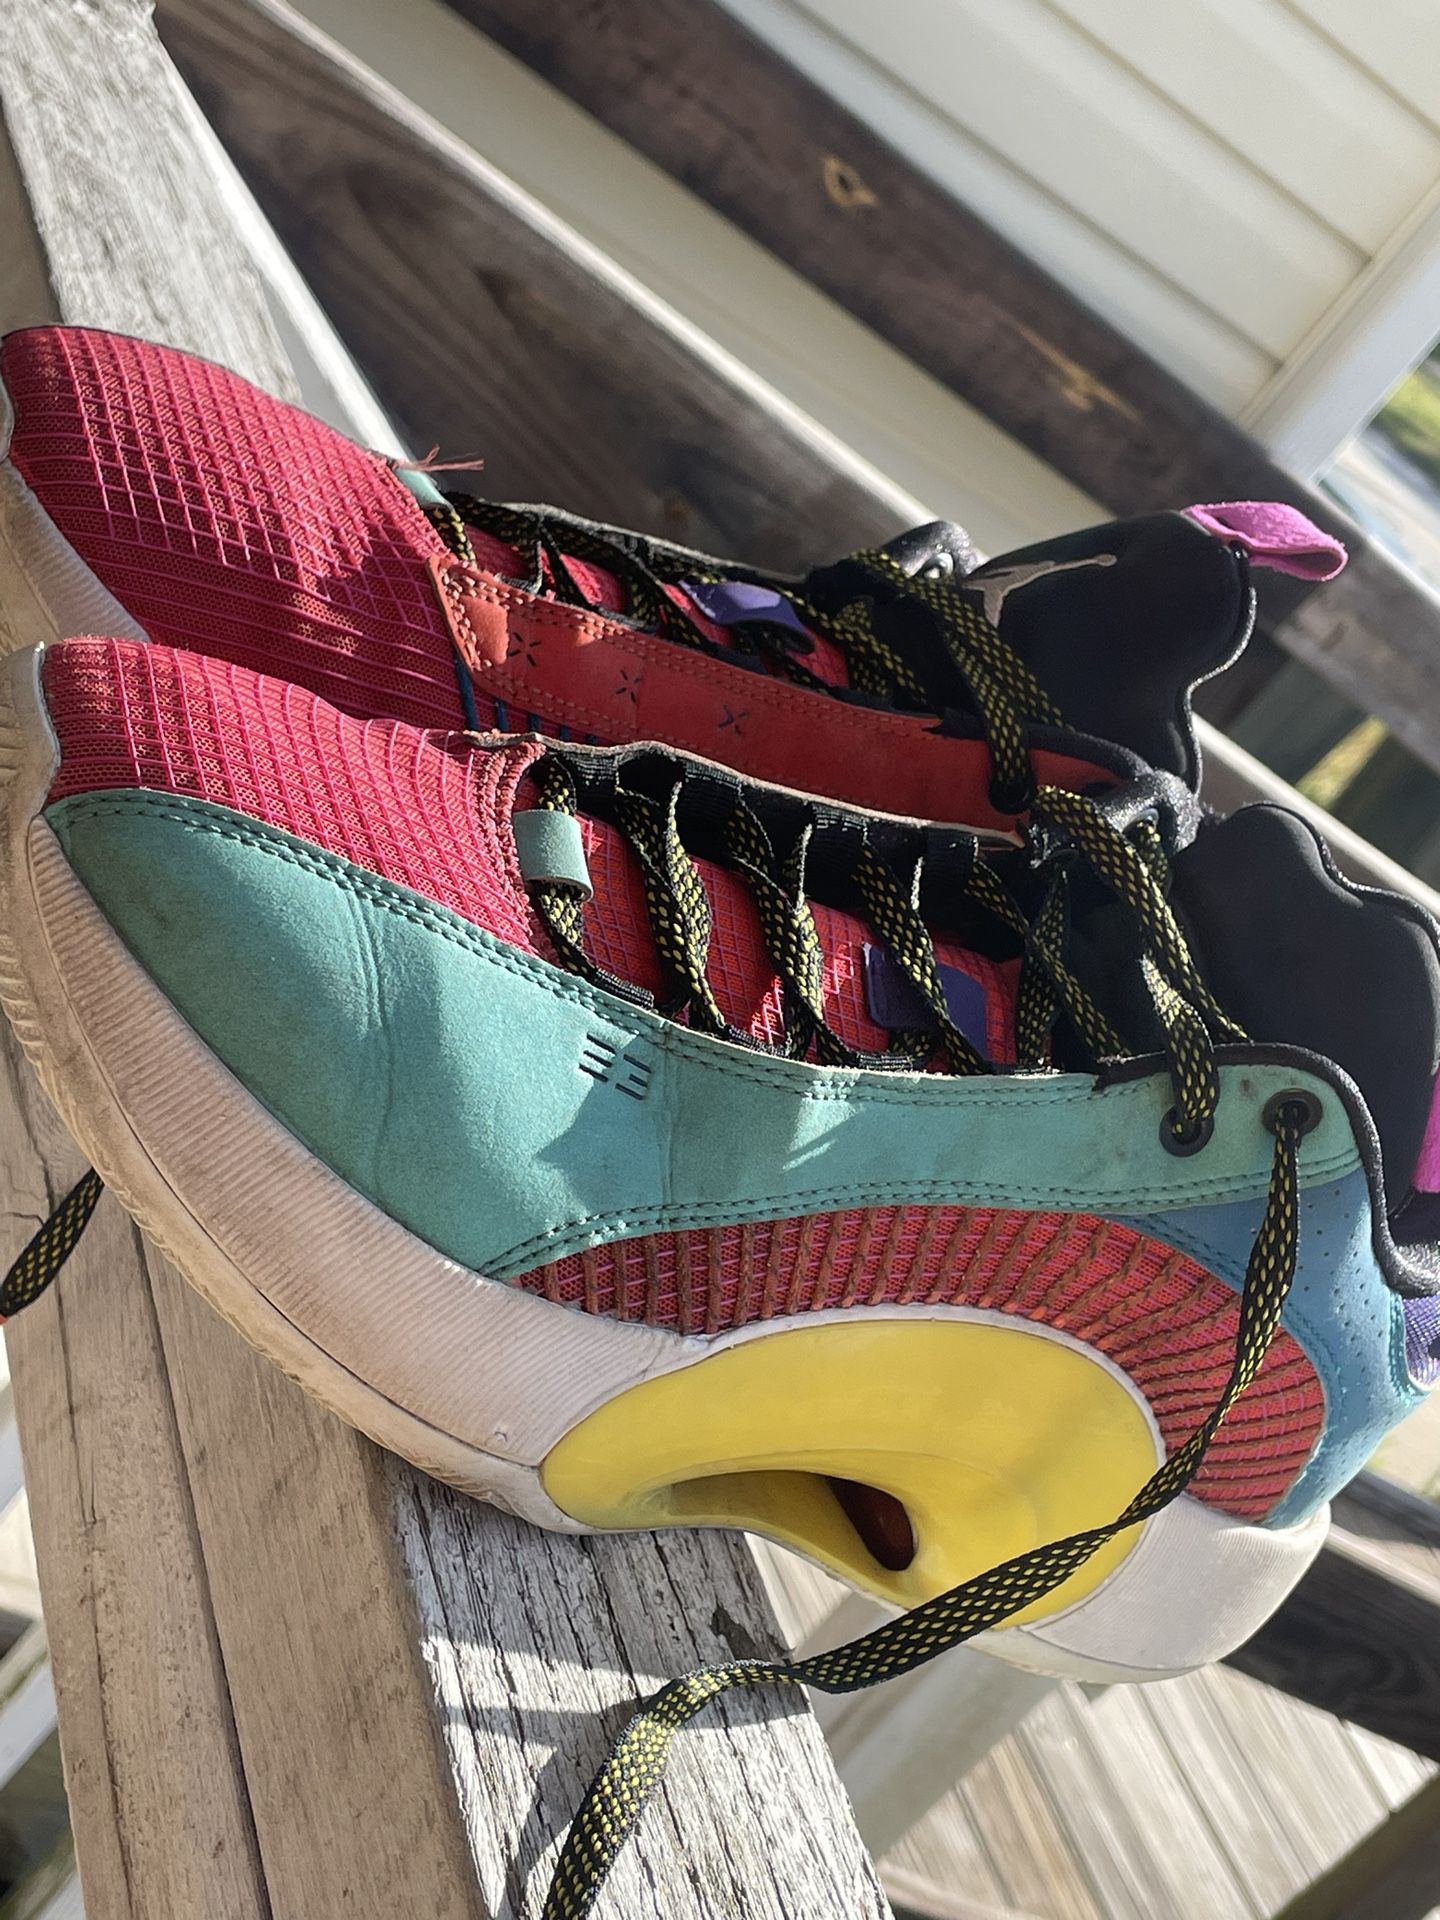 $30 Sneakers